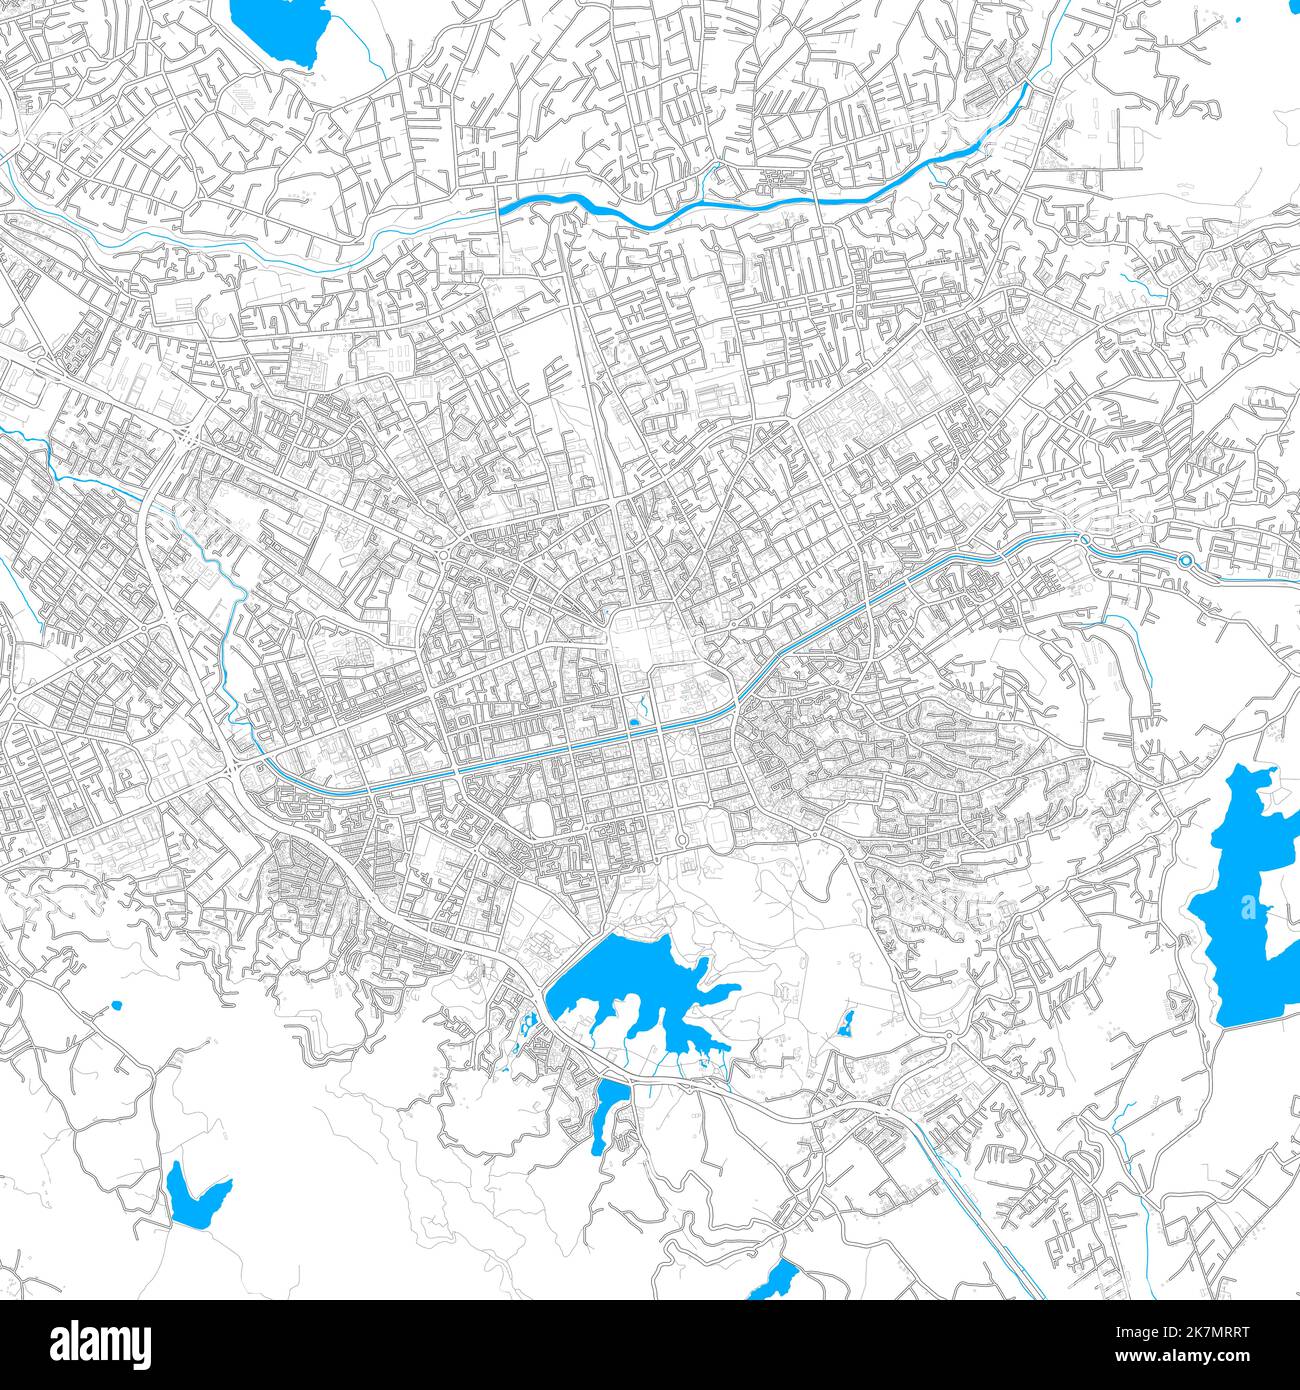 Tirana, Albanien hochauflösende Vektorkarte mit editierbaren Pfaden. Helle Umrisse für Hauptstraßen. Verwenden Sie es für jeden gedruckten und digitalen Hintergrund. Blaues sh Stock Vektor